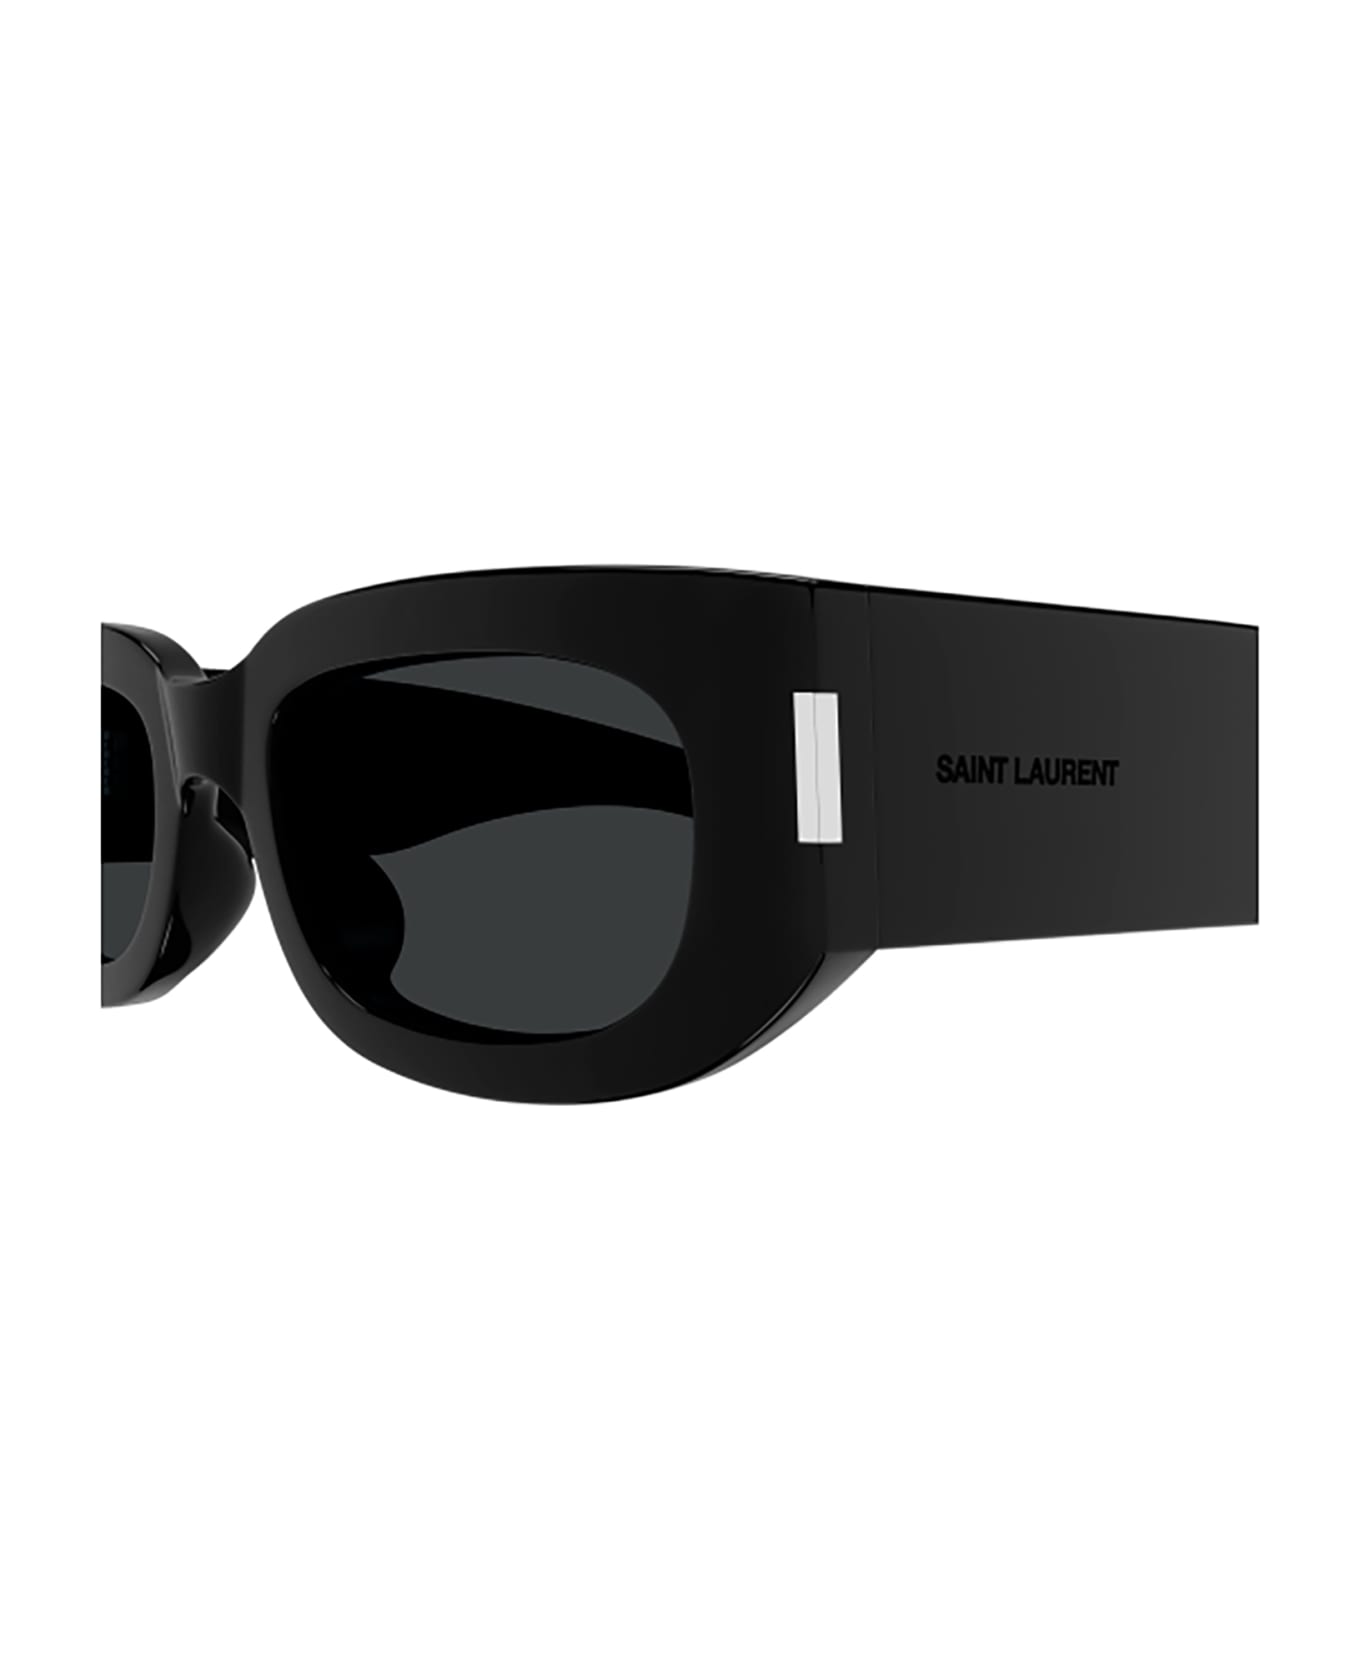 Saint Laurent Eyewear SL 697 Sunglasses - Black Black Black